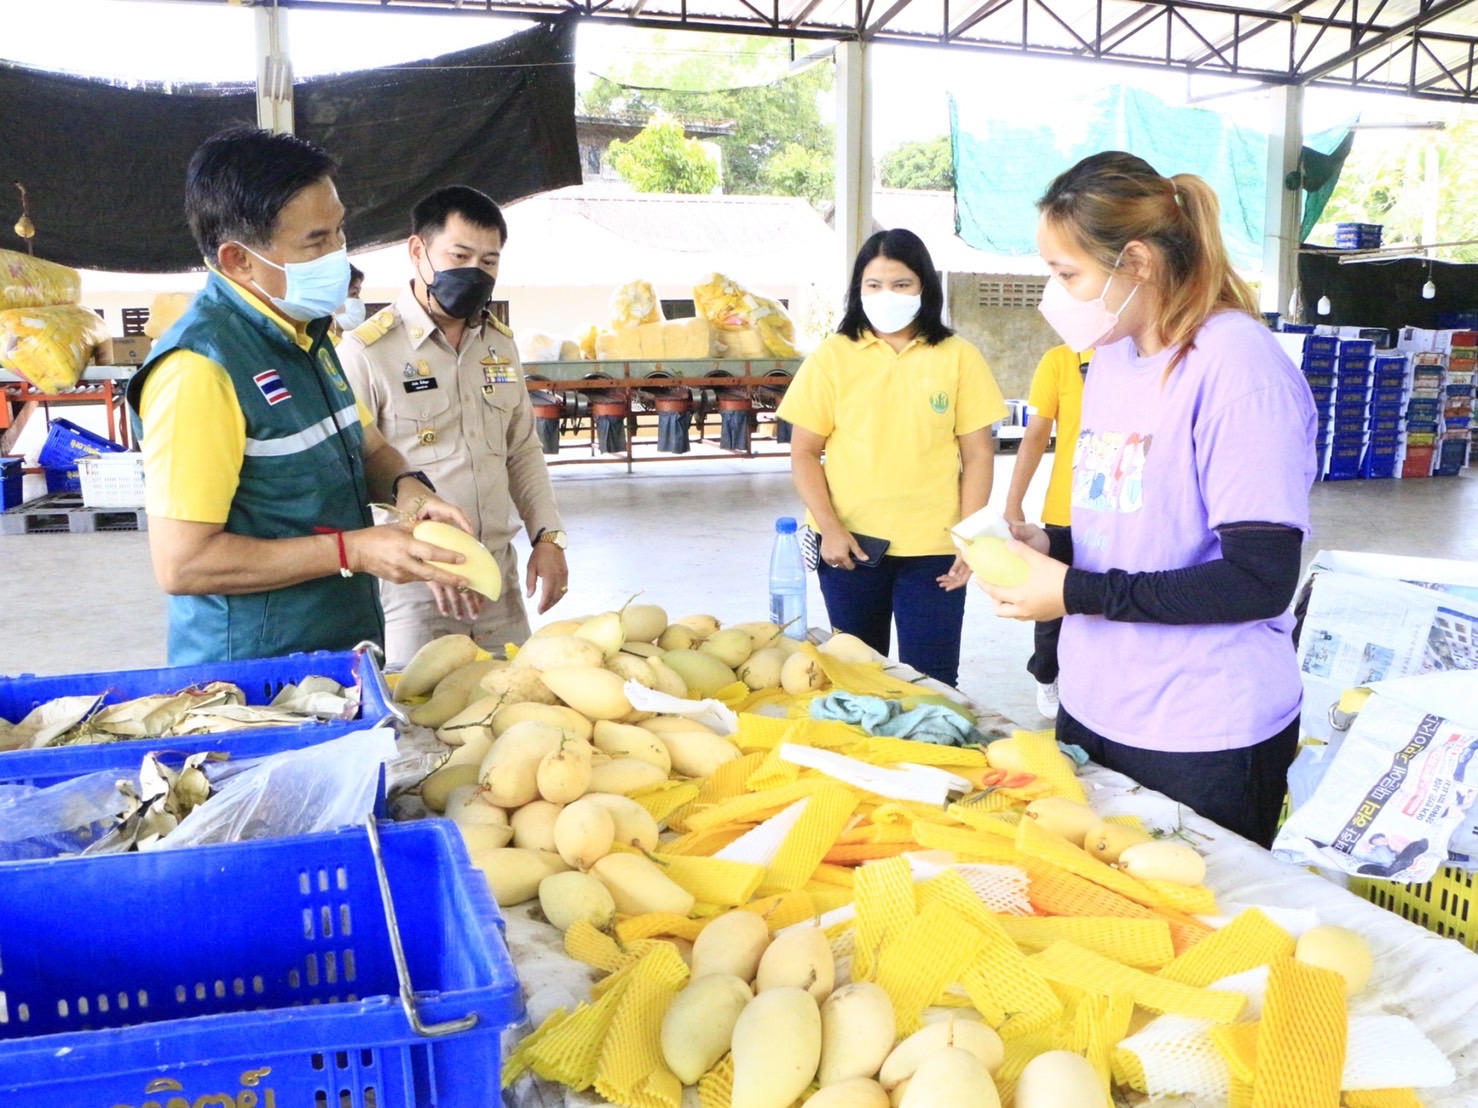 สำนักงานเกษตรจังหวัดเชียงใหม่ ชวนซื้อมะม่วงน้ำดอกไม้ สินค้าจากเกษตรกรไทย ส่งขายออกตลาดต่างประเทศ